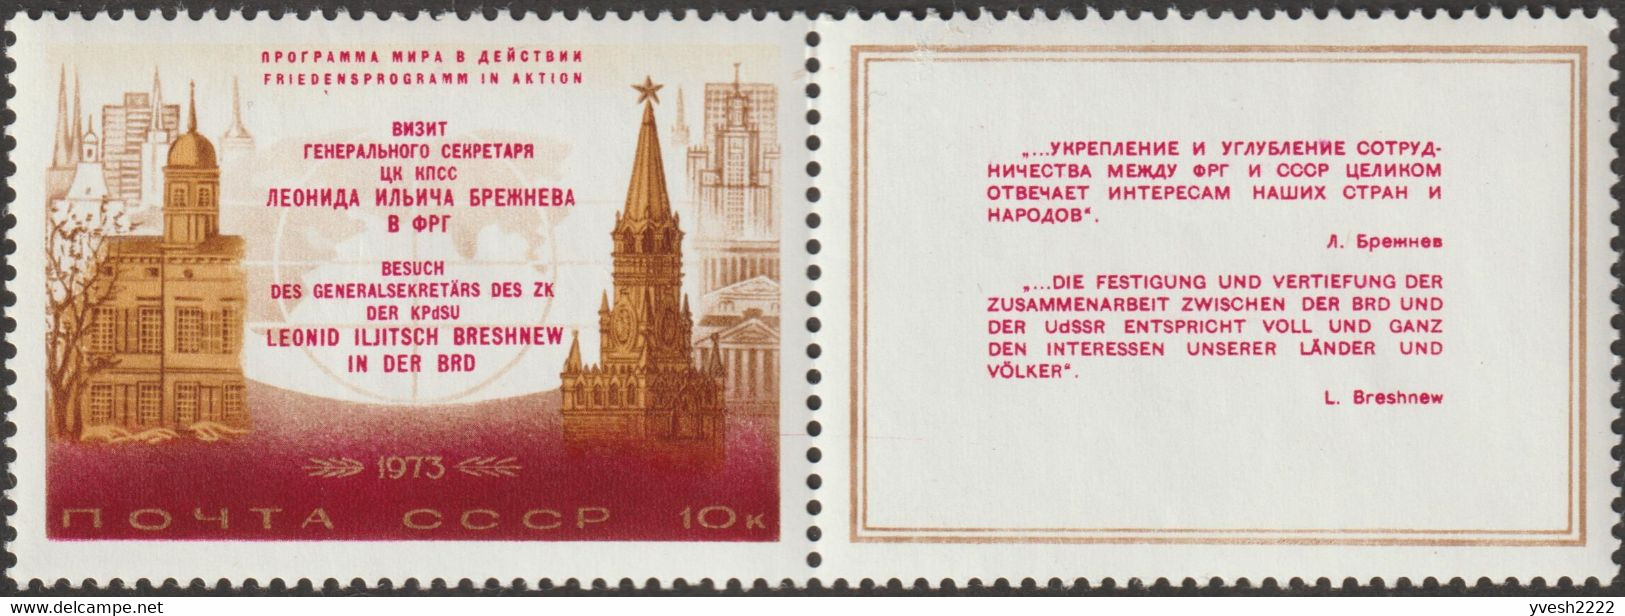 URSS 1973 Y&T 3959. Curiosité De Couleurs. Palais Schaumburg, Bonn; Tour Spassky, Moscou. Voyage Brejnev - Errors & Oddities